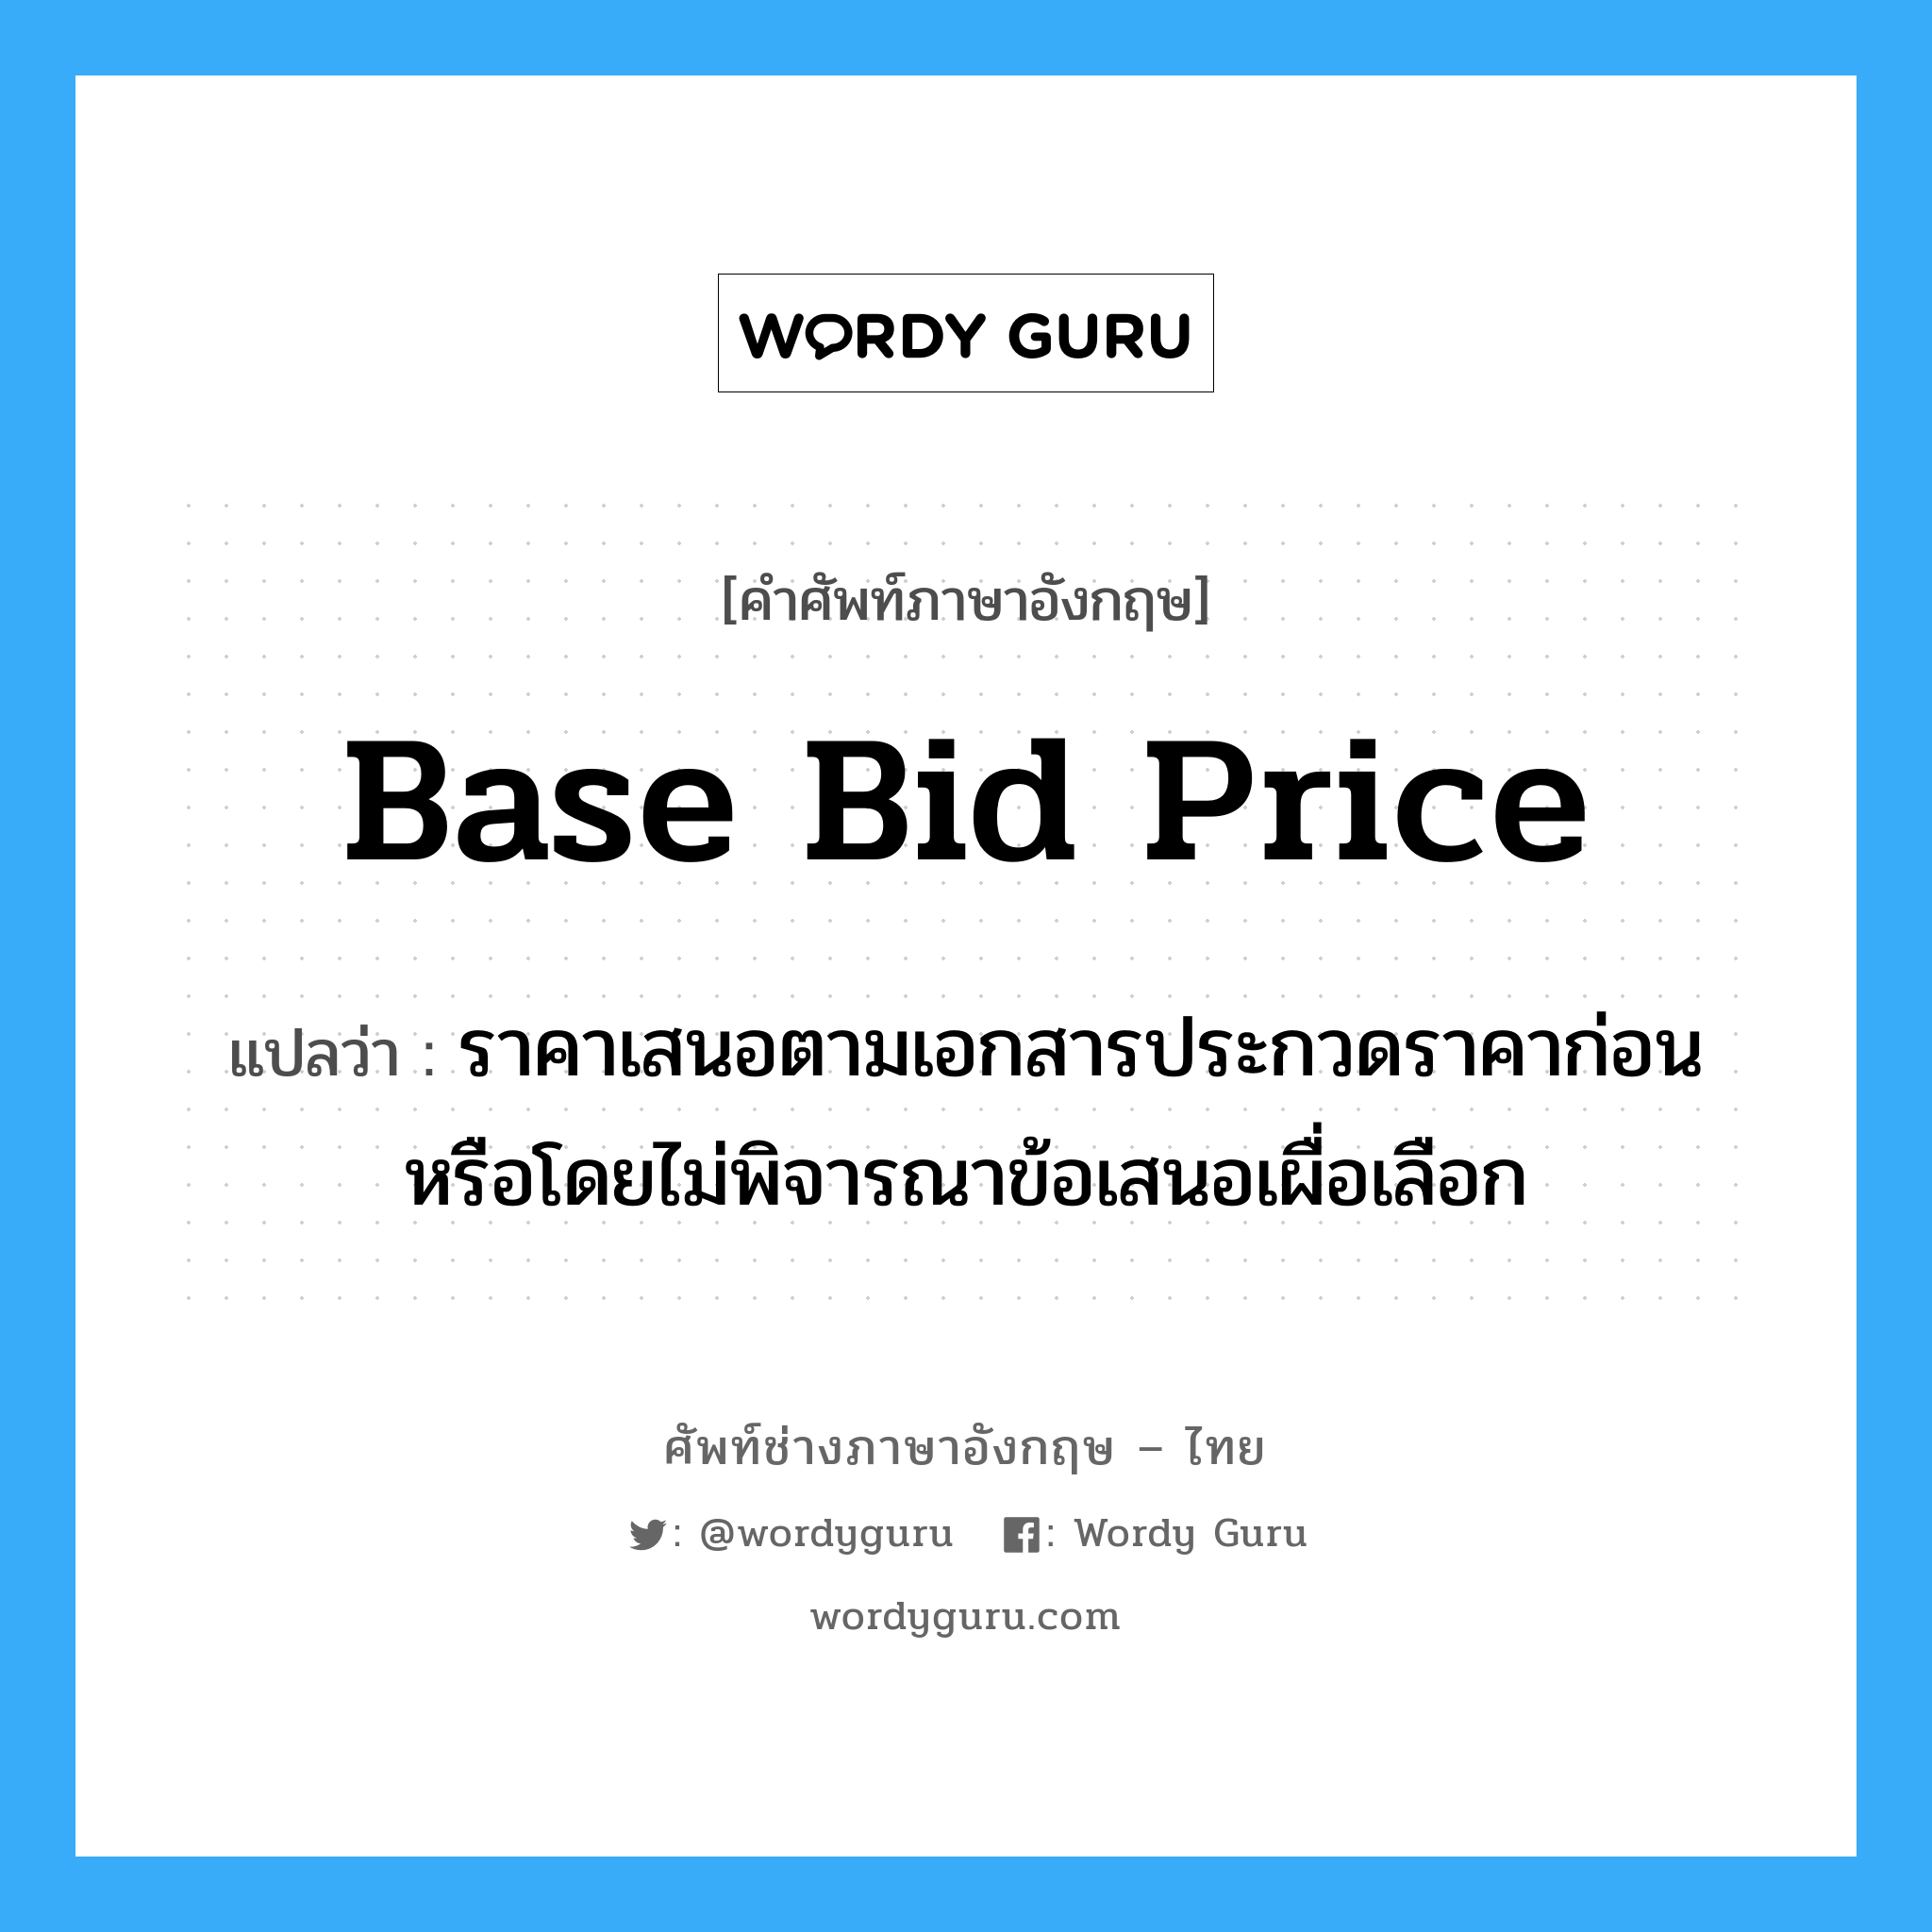 Base Bid Price แปลว่า?, คำศัพท์ช่างภาษาอังกฤษ - ไทย Base Bid Price คำศัพท์ภาษาอังกฤษ Base Bid Price แปลว่า ราคาเสนอตามเอกสารประกวดราคาก่อน หรือโดยไม่พิจารณาข้อเสนอเผื่อเลือก